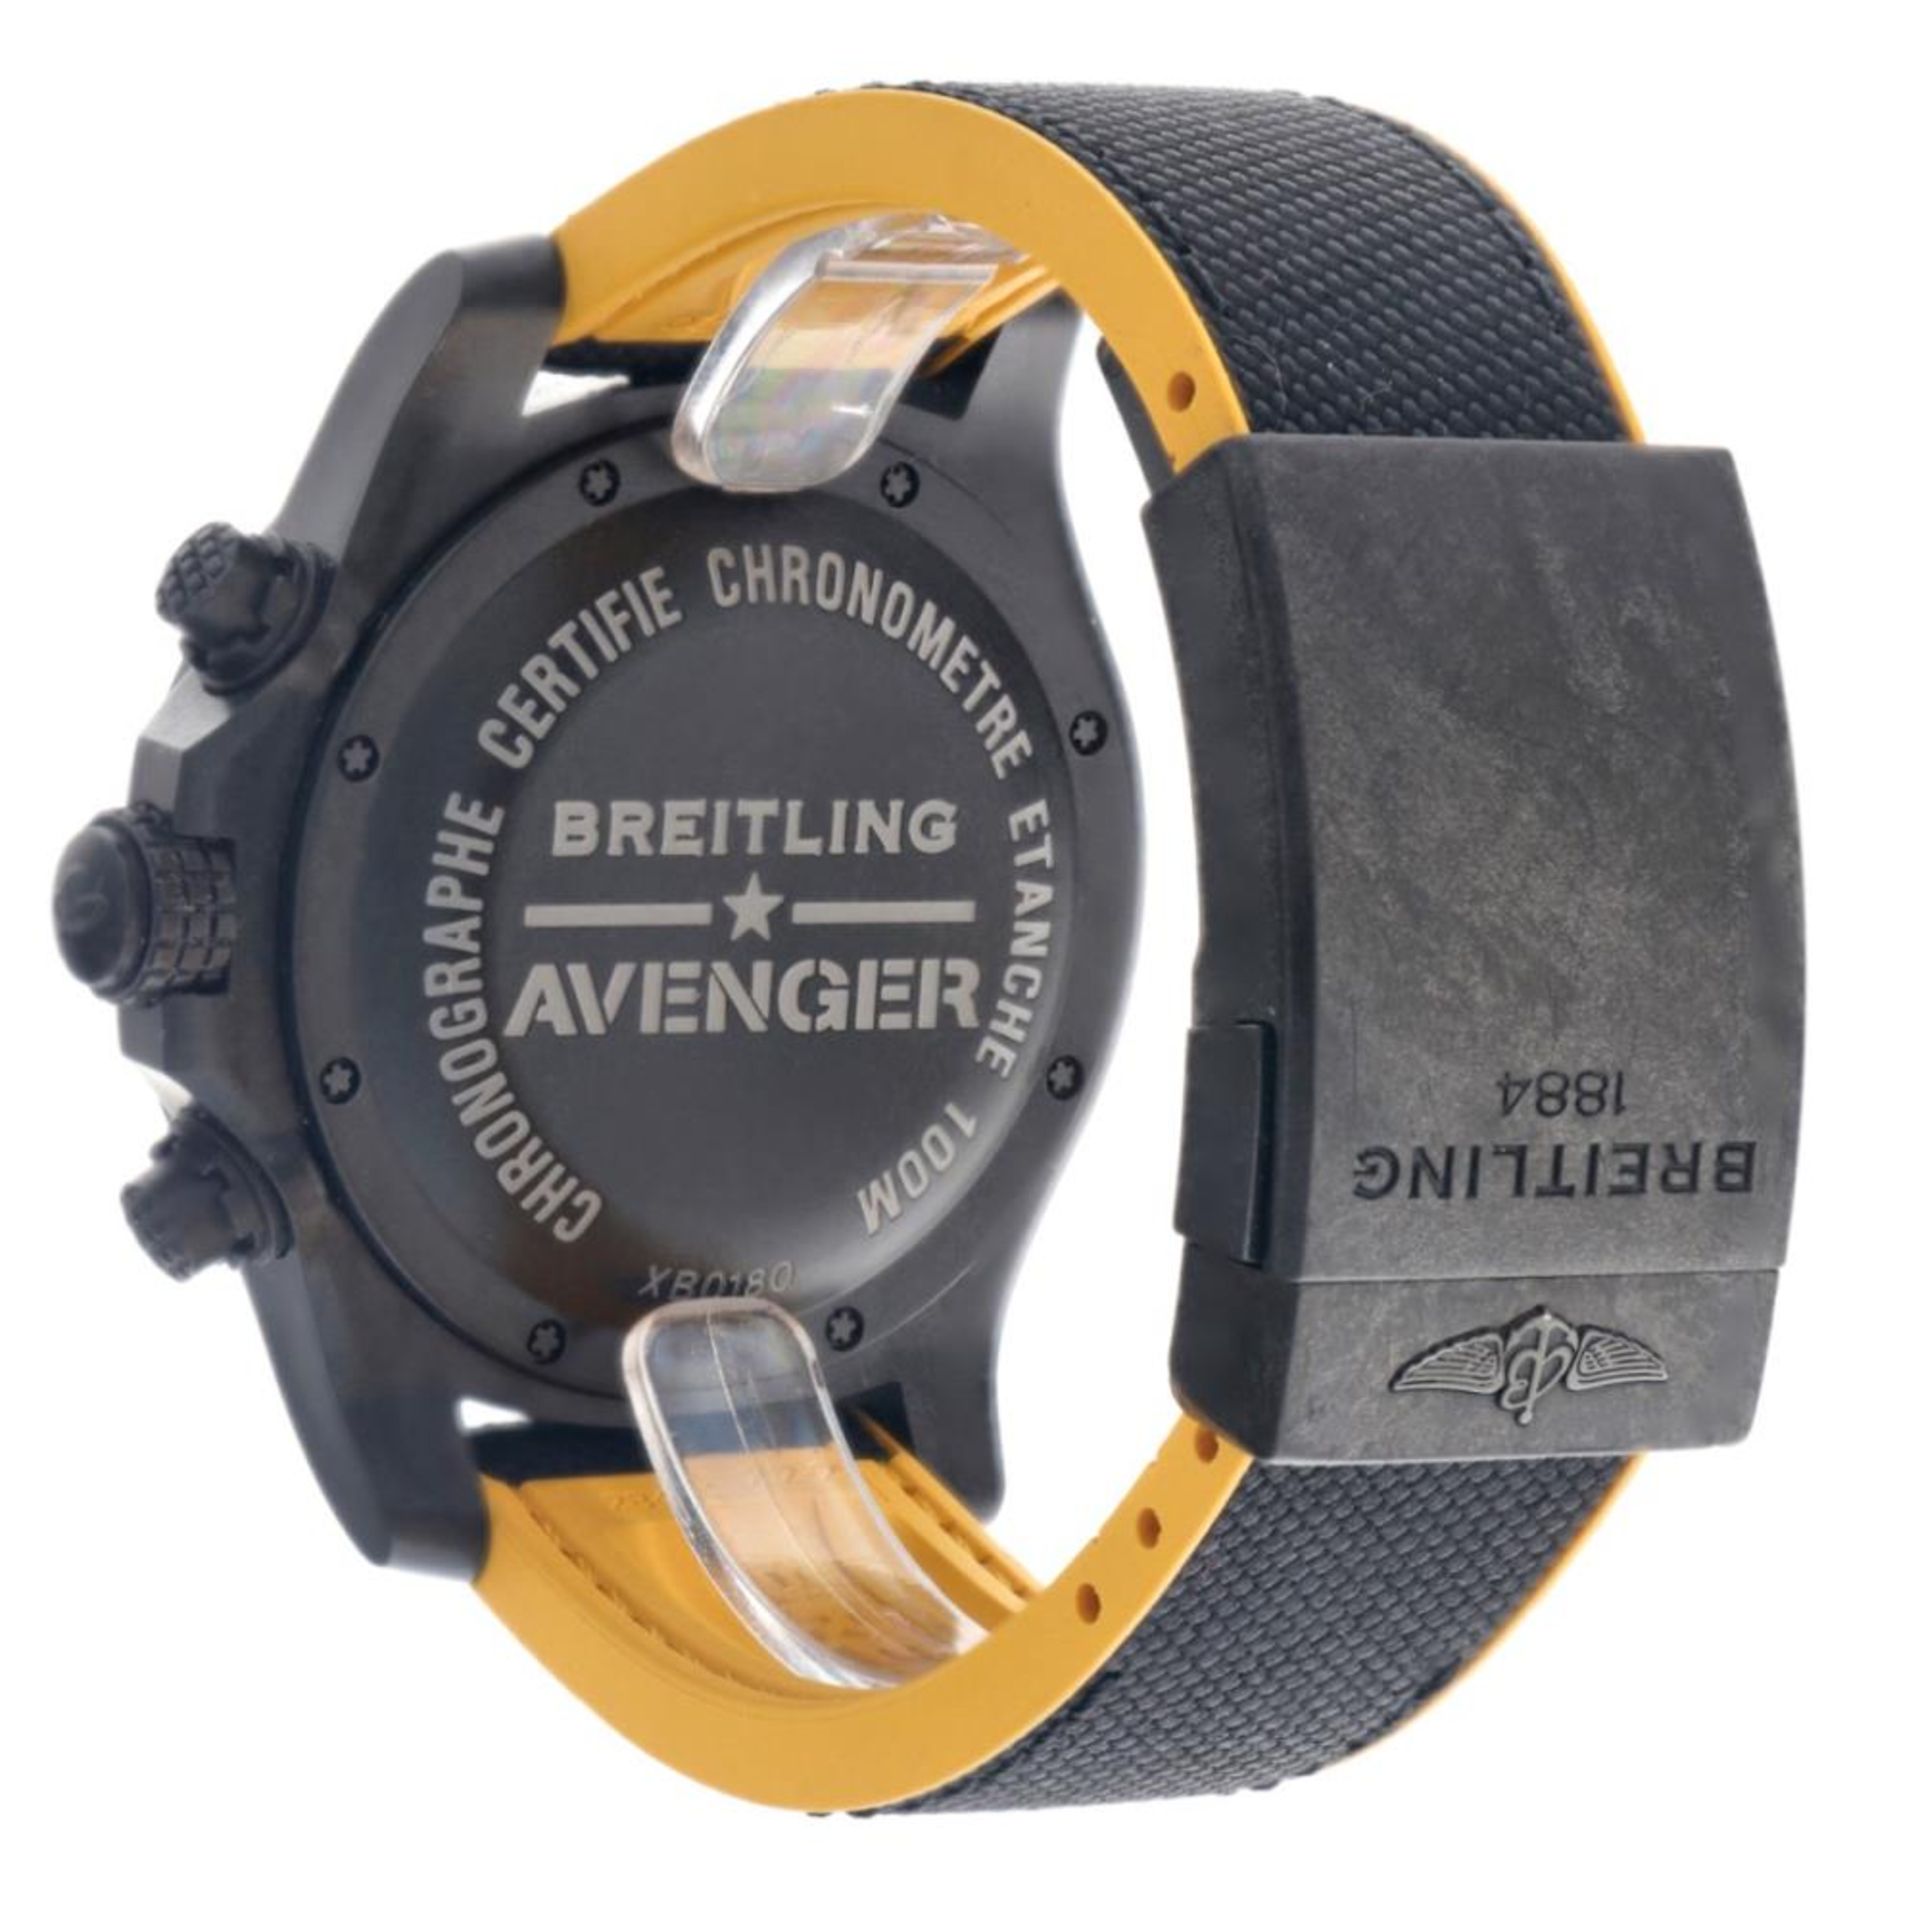 Breitling Avenger Hurricane XB0180E4 - Men's watch - 2019. - Image 6 of 12